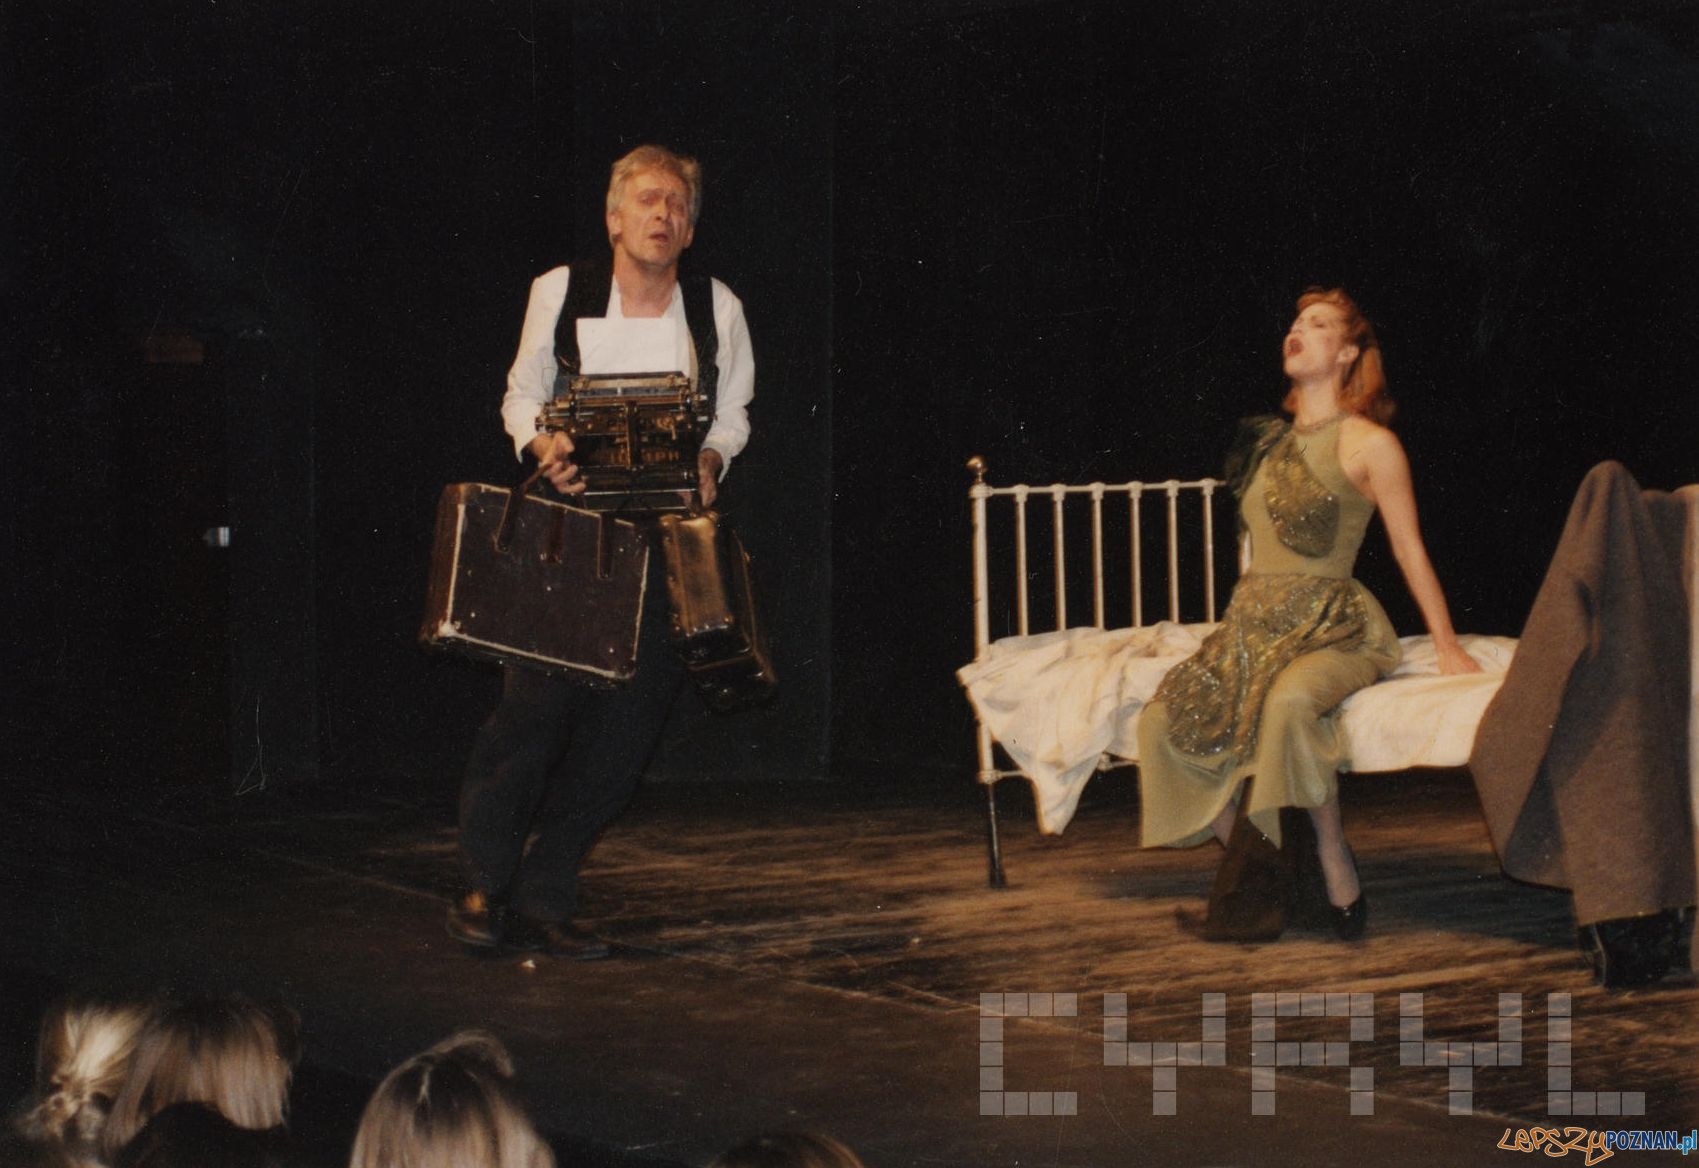 Michał Grudzinski Grazyna Lulka - sztua Mein Kampf w Teatrze Nowy  - 11.12.1990  Foto: Ryszard Mogilnicki / Cyryl